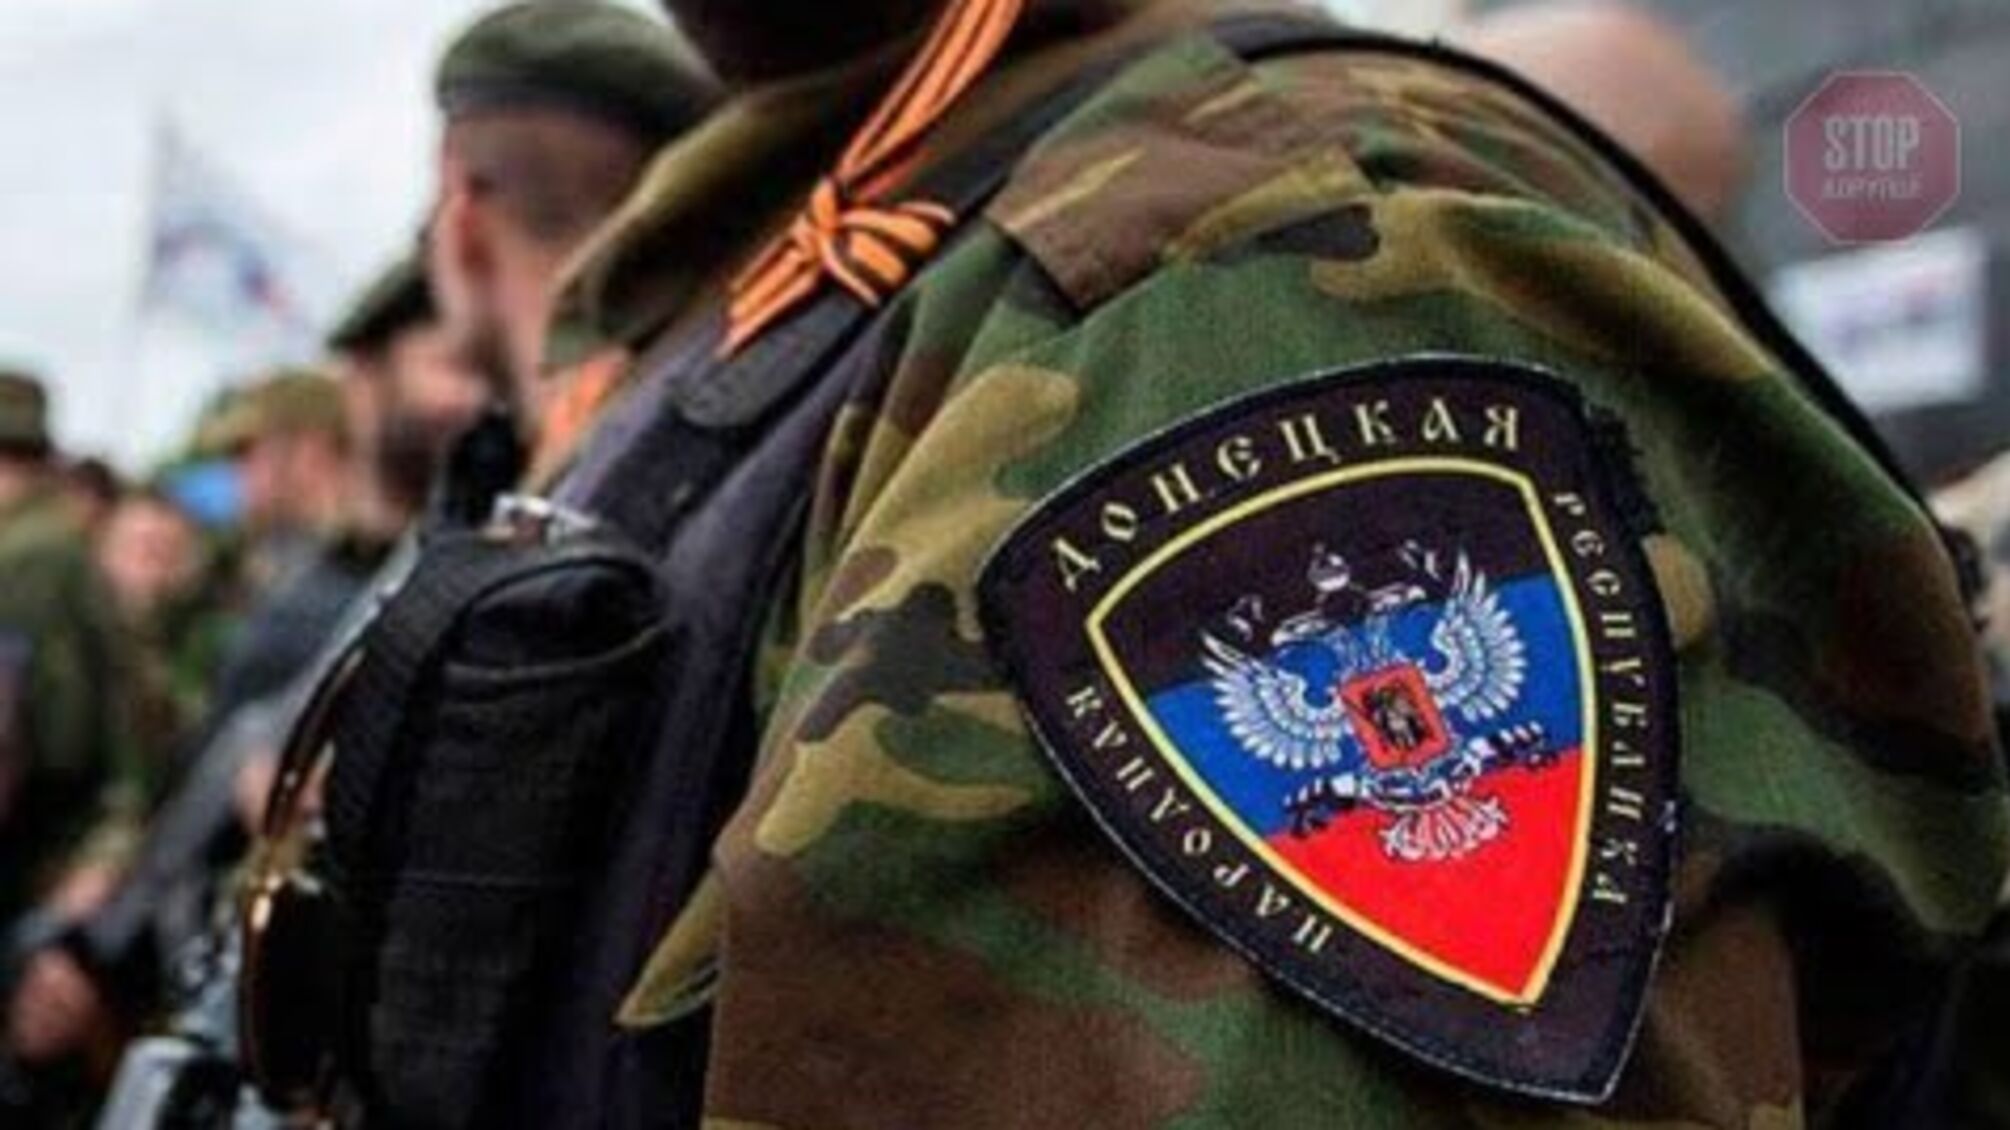 На Донбасі окупаційні війська РФ знову відкривали вогонь